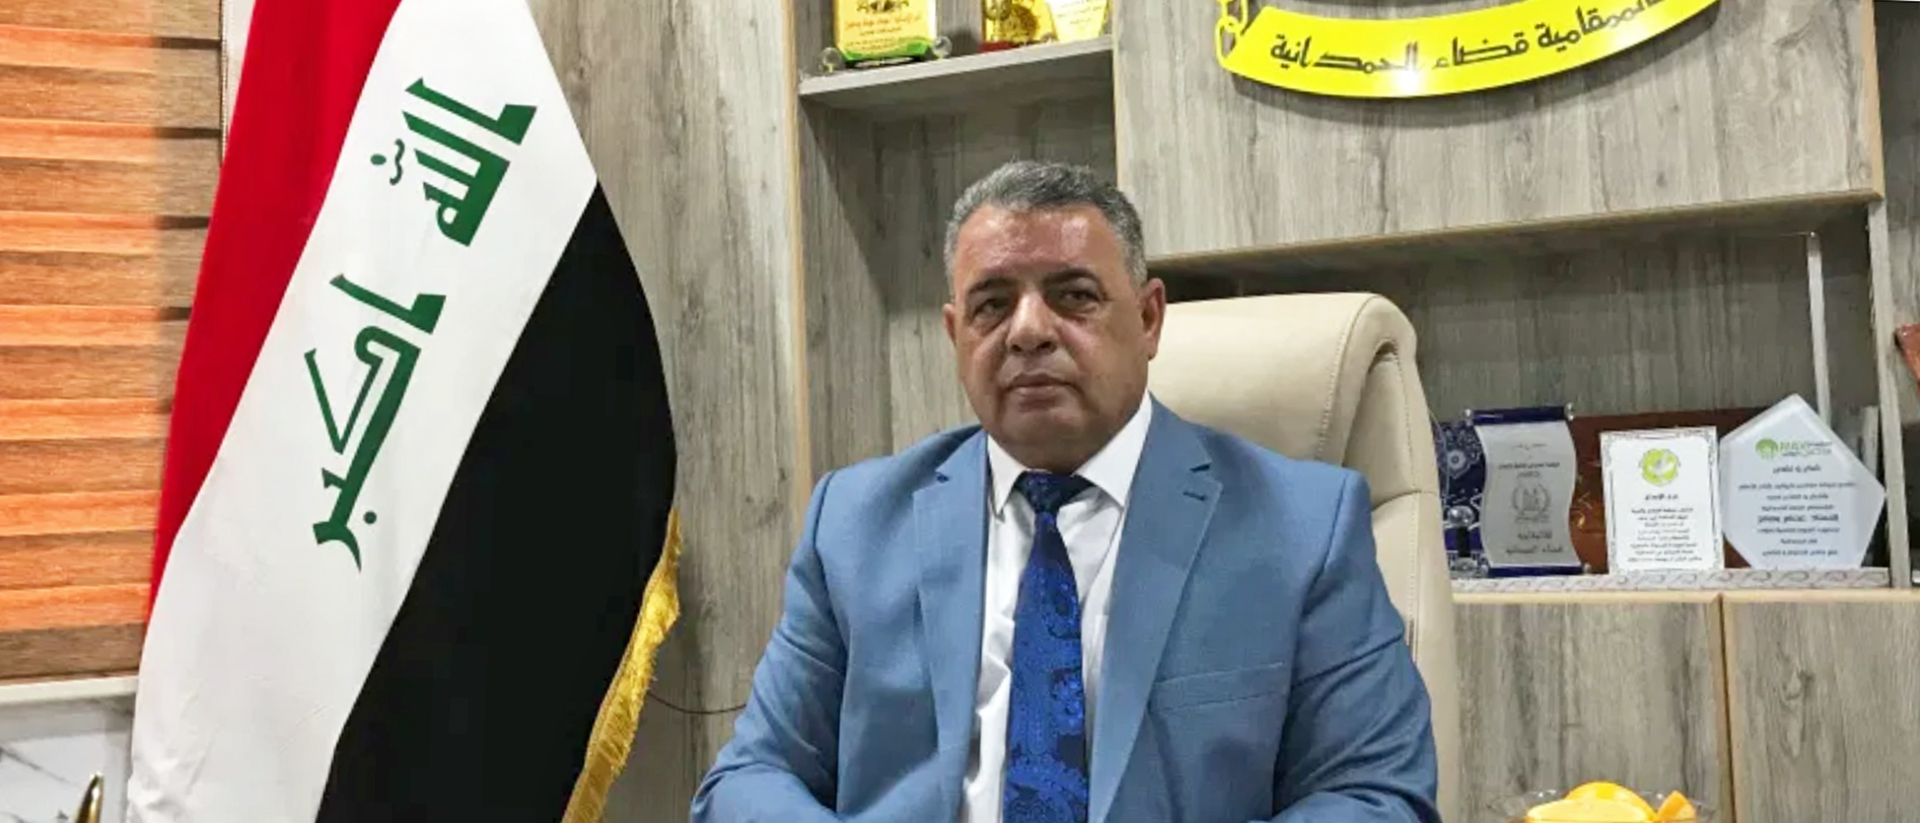 Isam Daaboul, le maire de Qaraqosh, Irak | © Hugues Lefevre –  I.MEDIA 